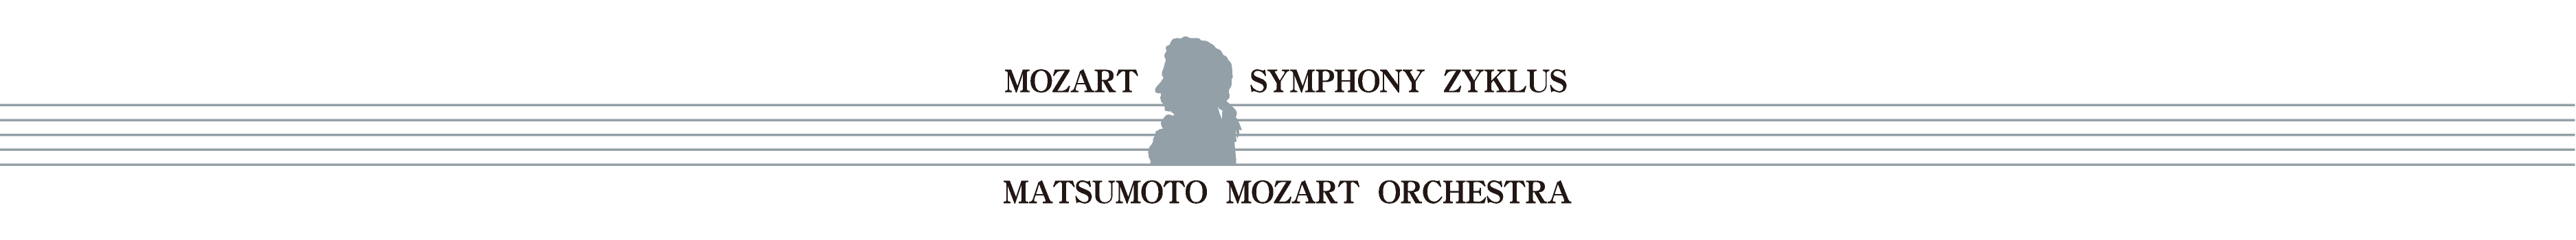 第10回 モーツァルト交響曲・全曲演奏会